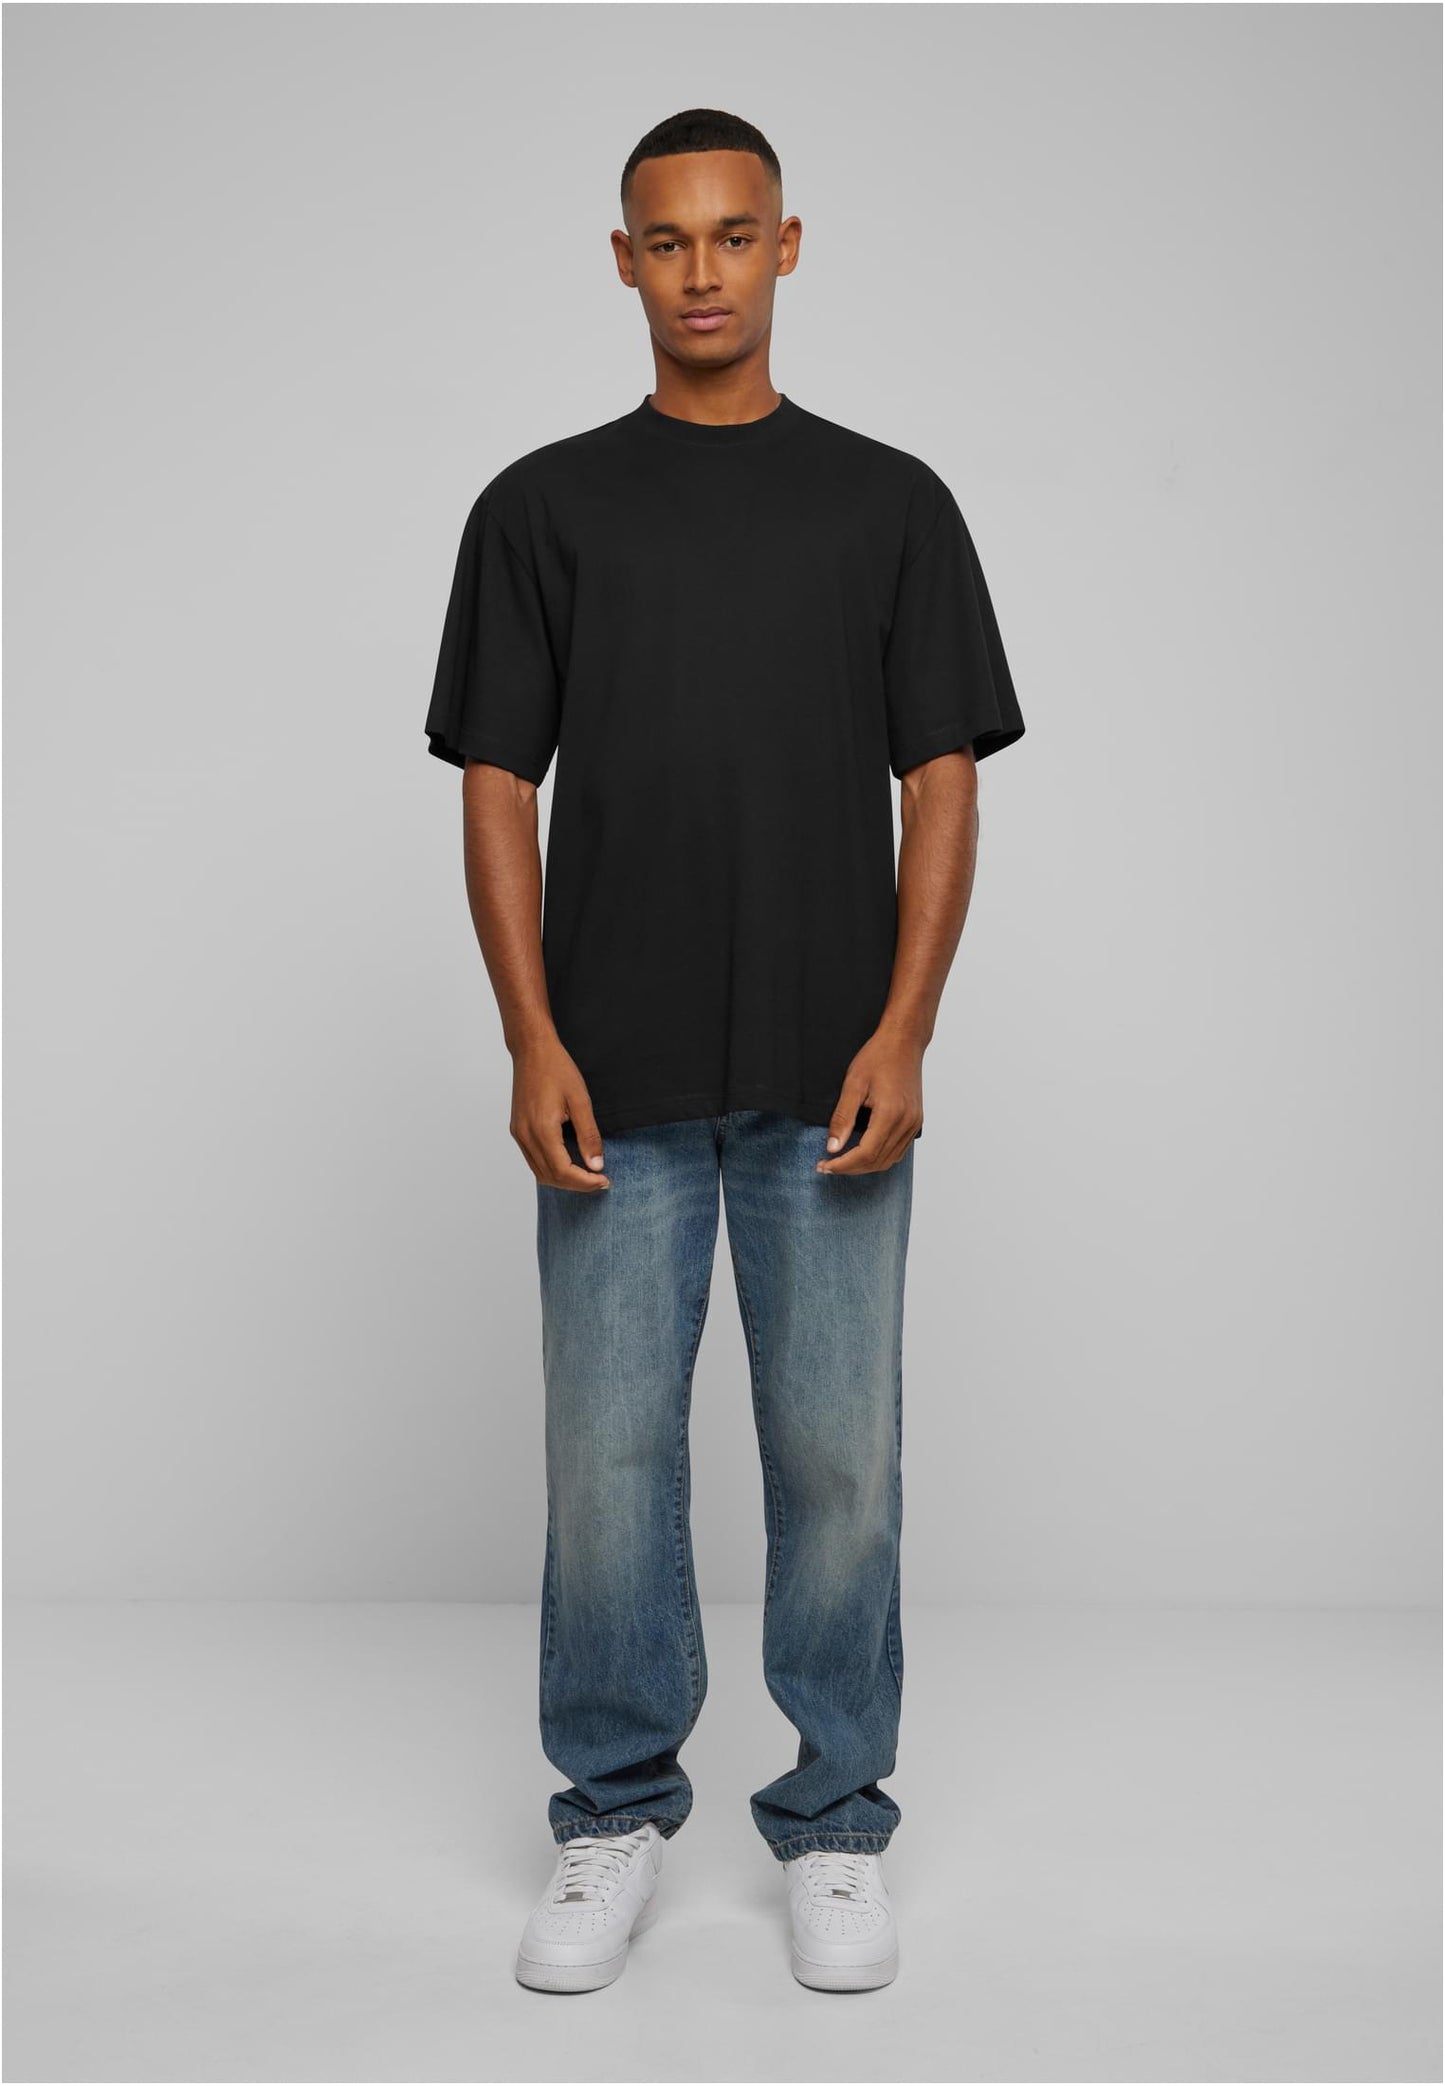 T-shirt Urban Classics TB006 Tall Black